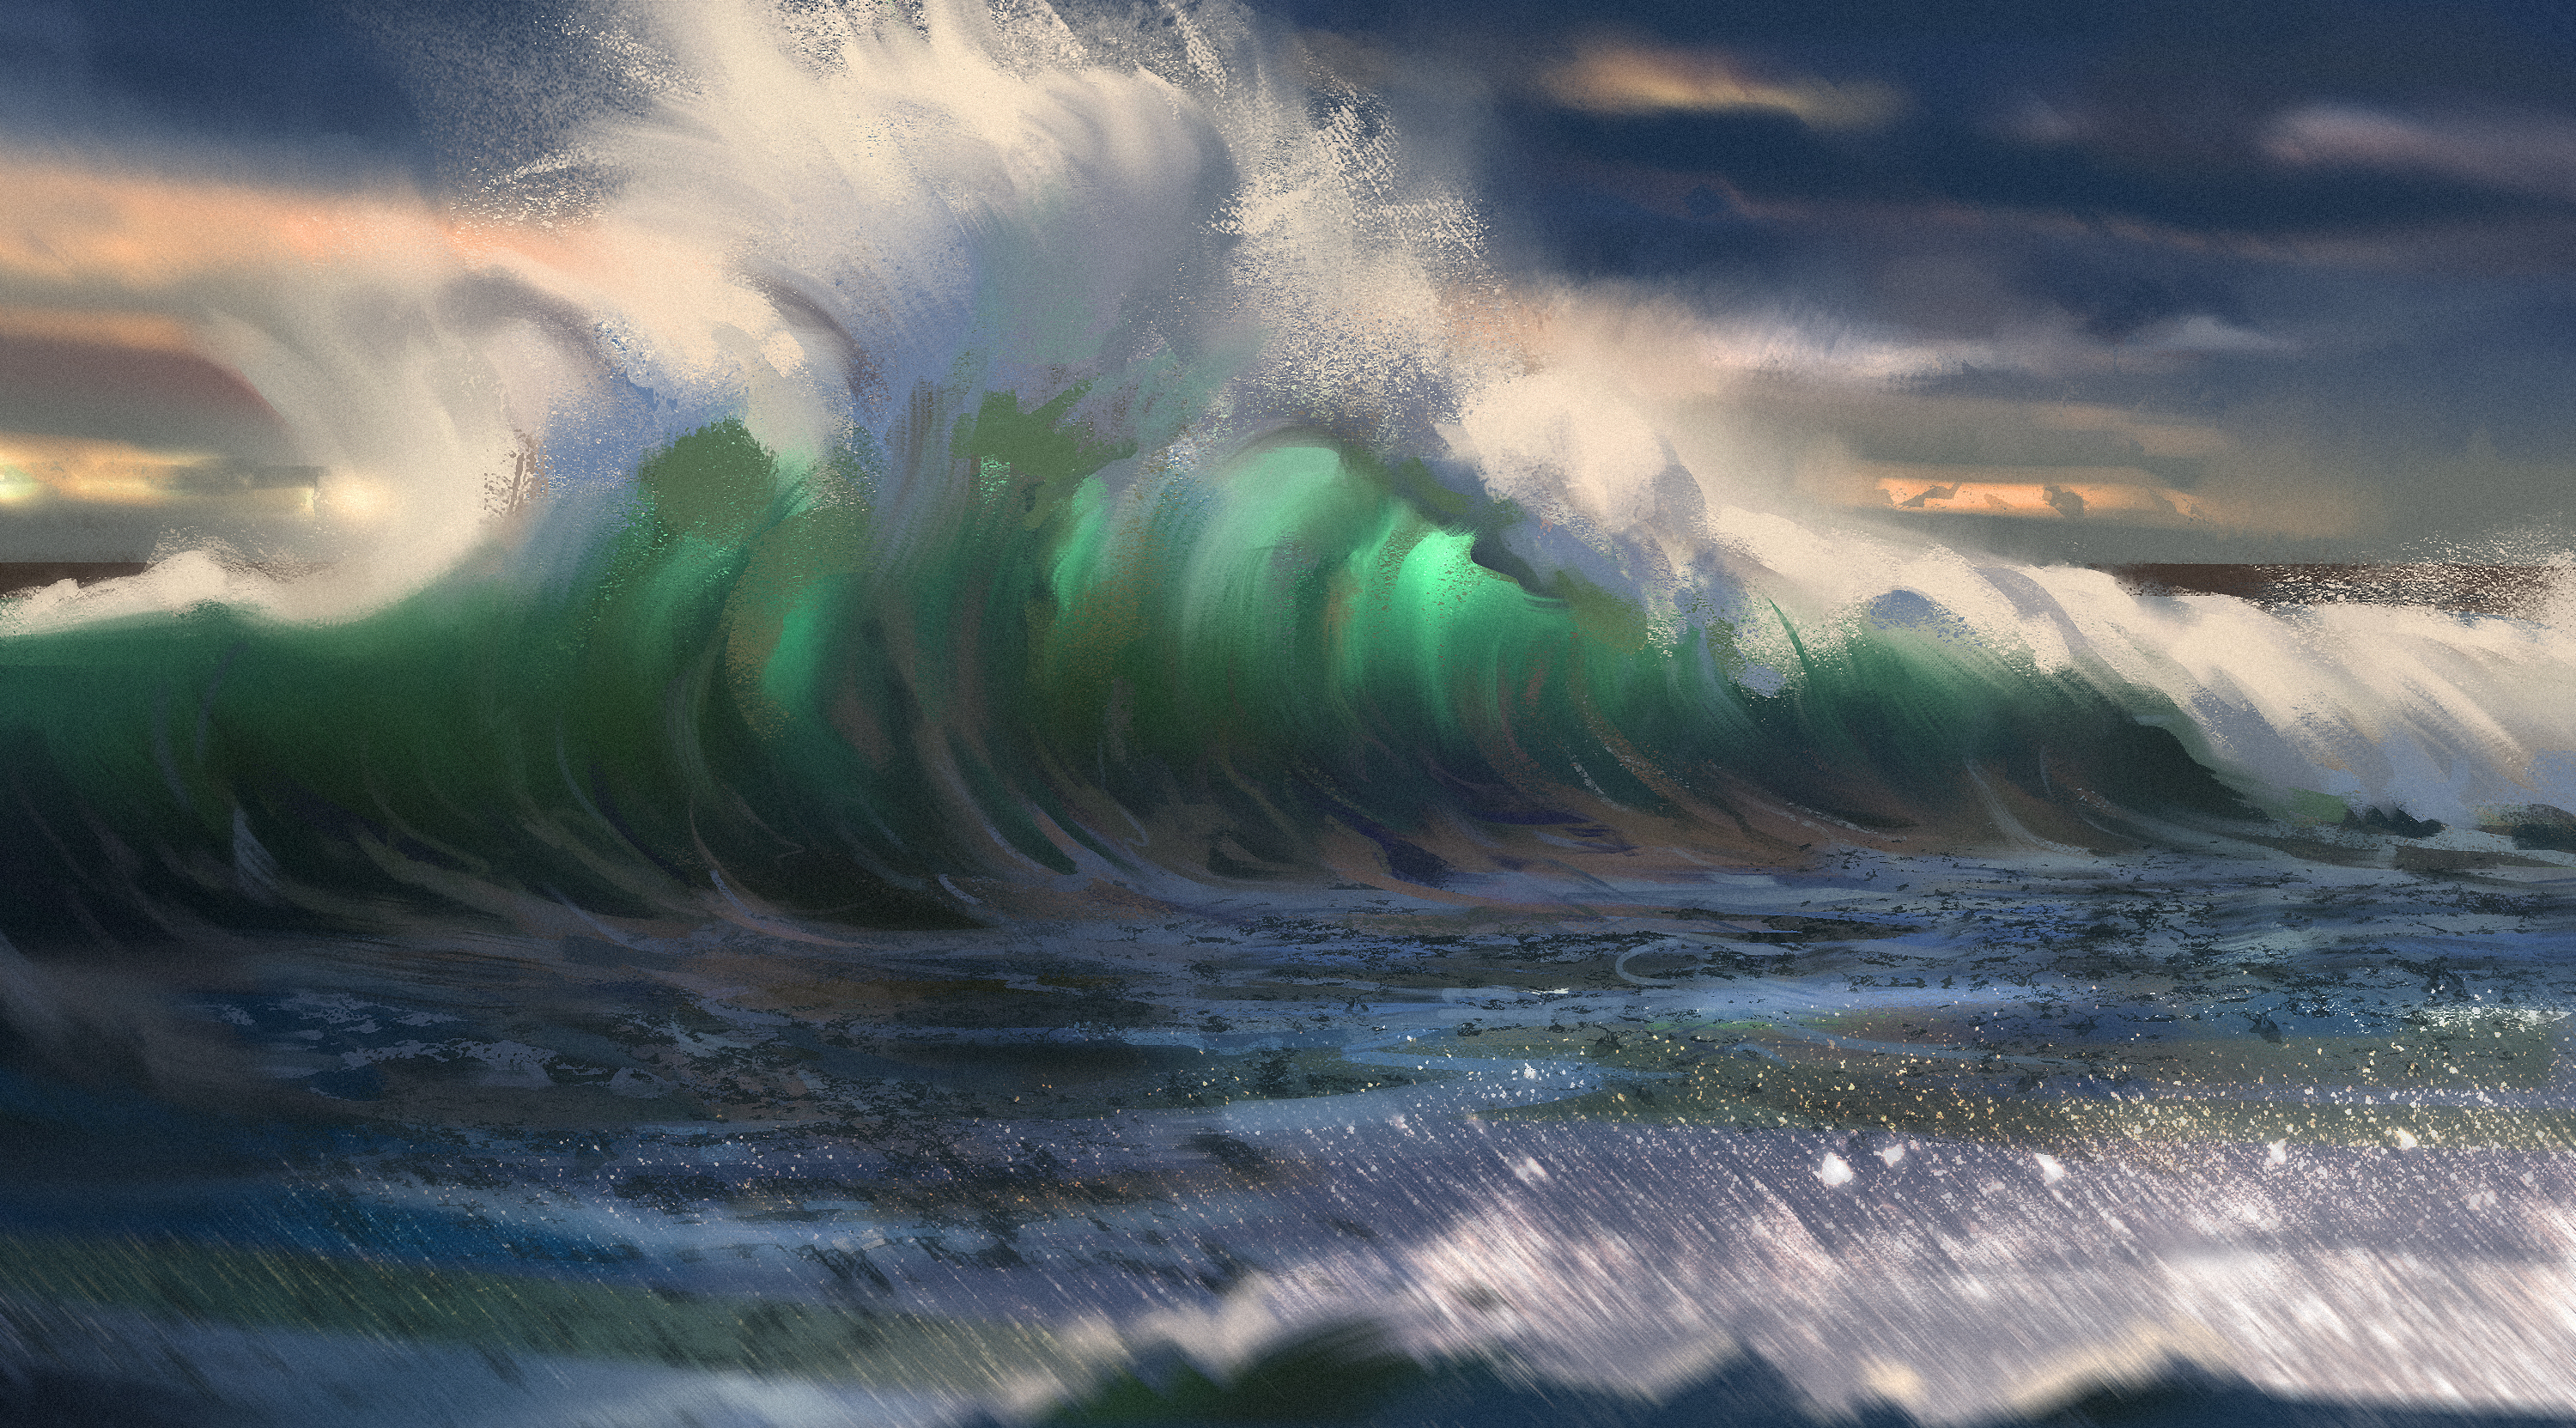 Painting of Ocean Wave by Marius Janusonis